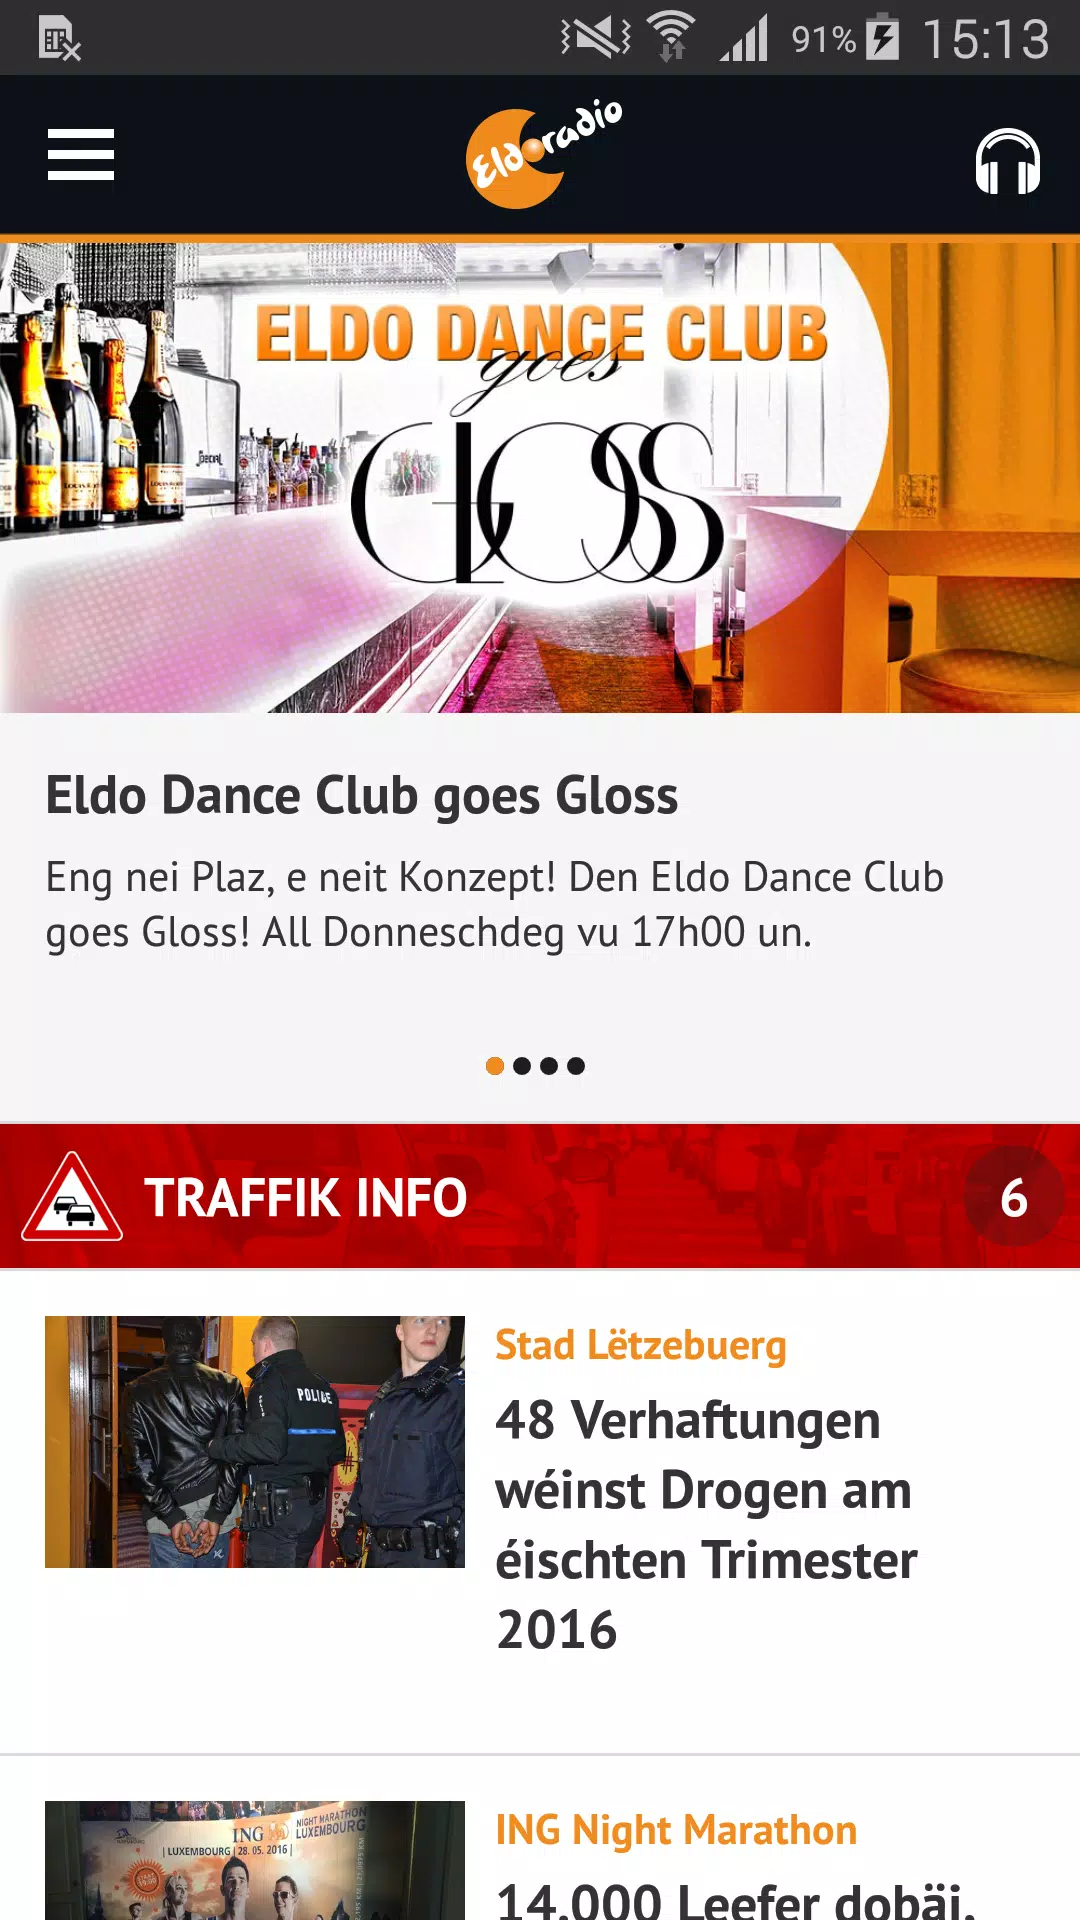 Eldoradio APK pour Android Télécharger